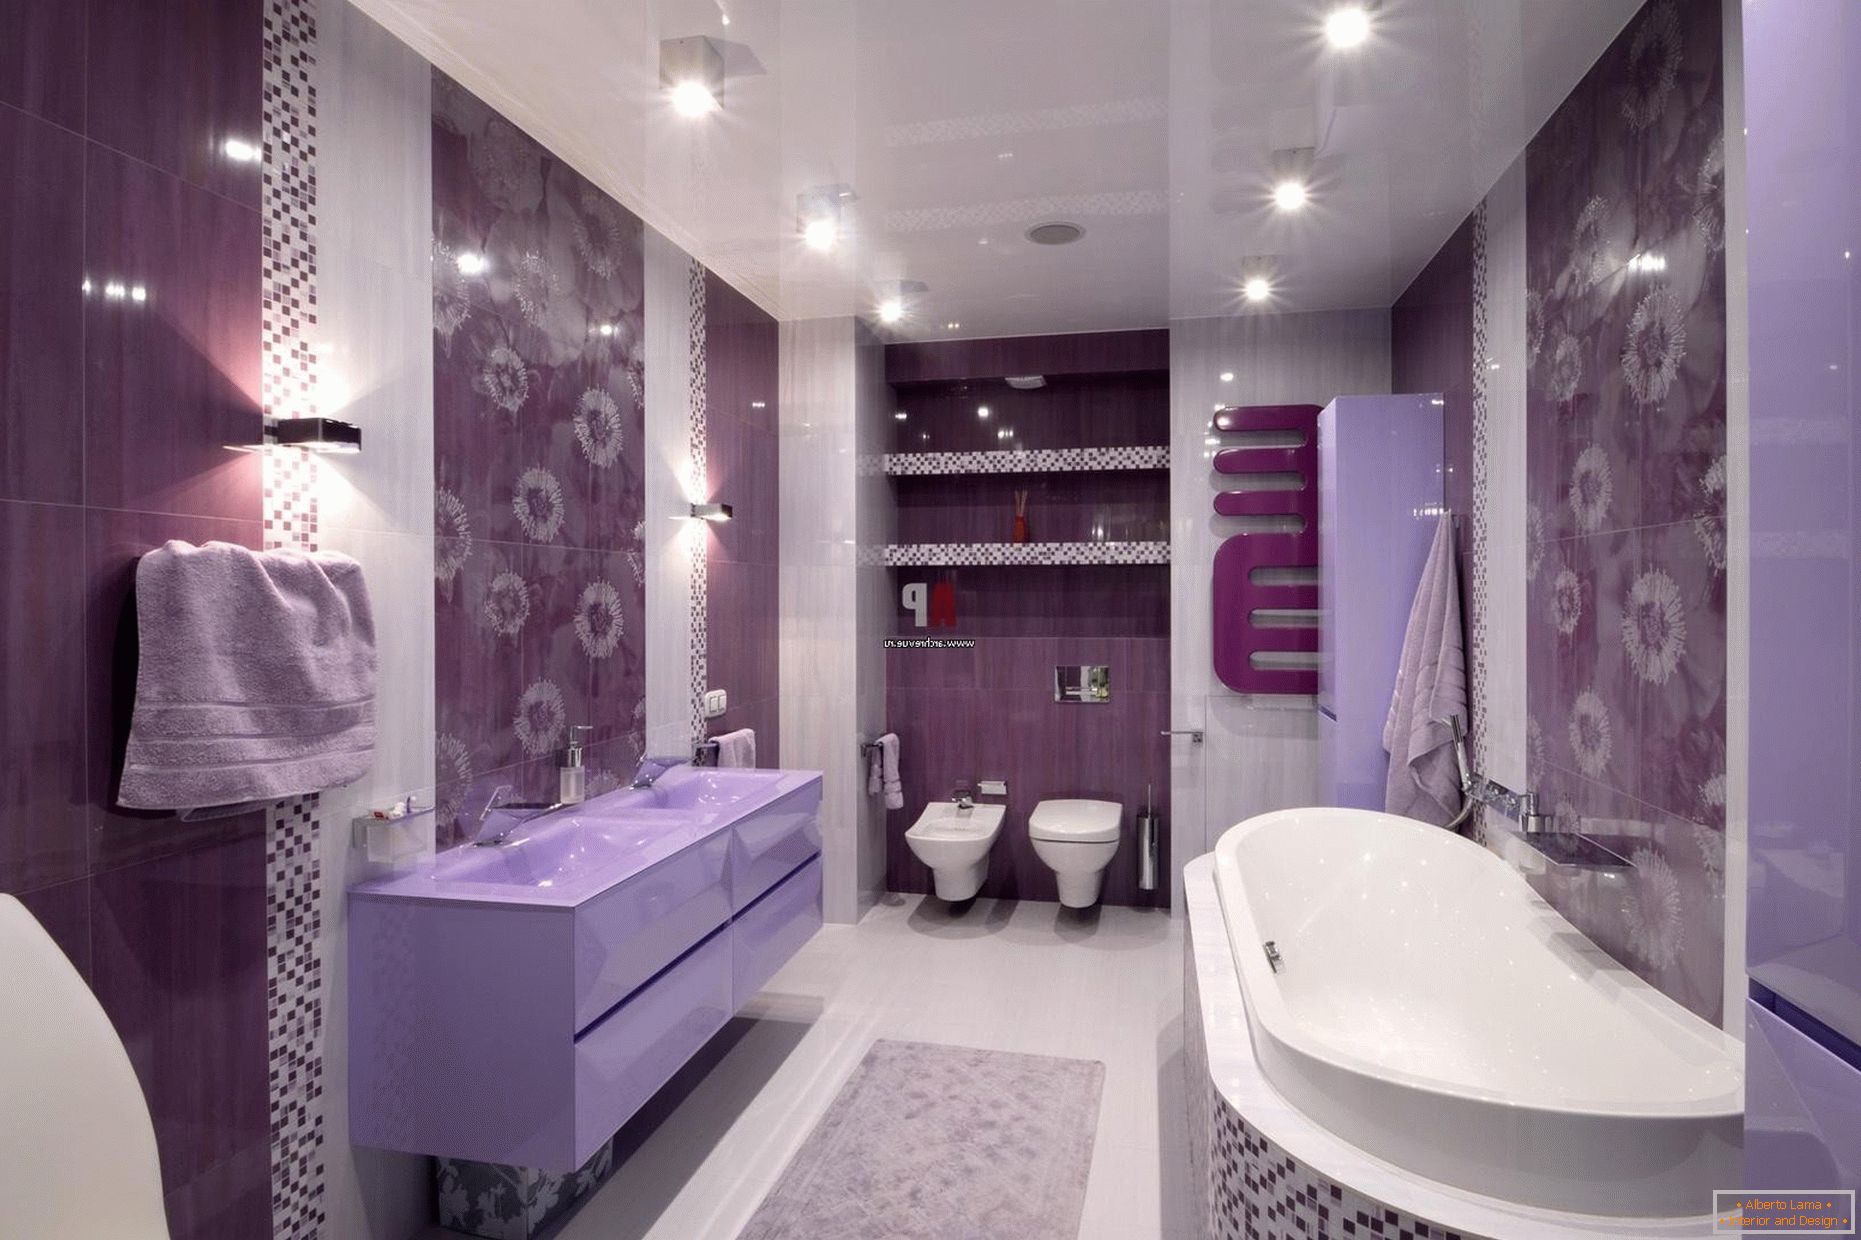 Lujoso diseño del baño en flores color lila